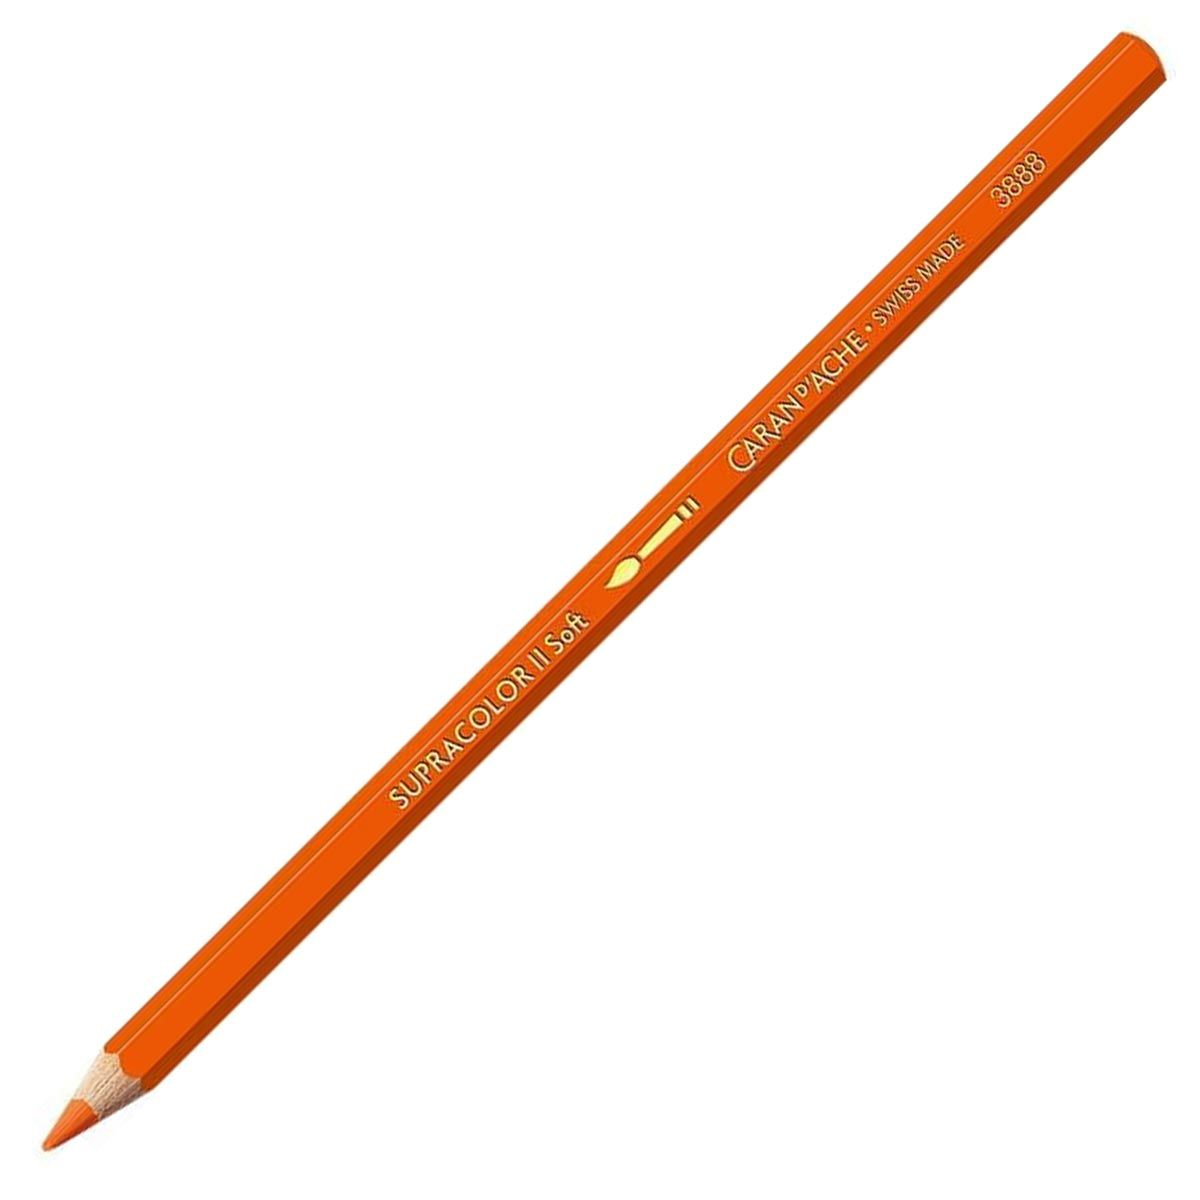 Caran d'Ache Supracolor ll Soft Aquarelle Pencil Reddish Orange 040